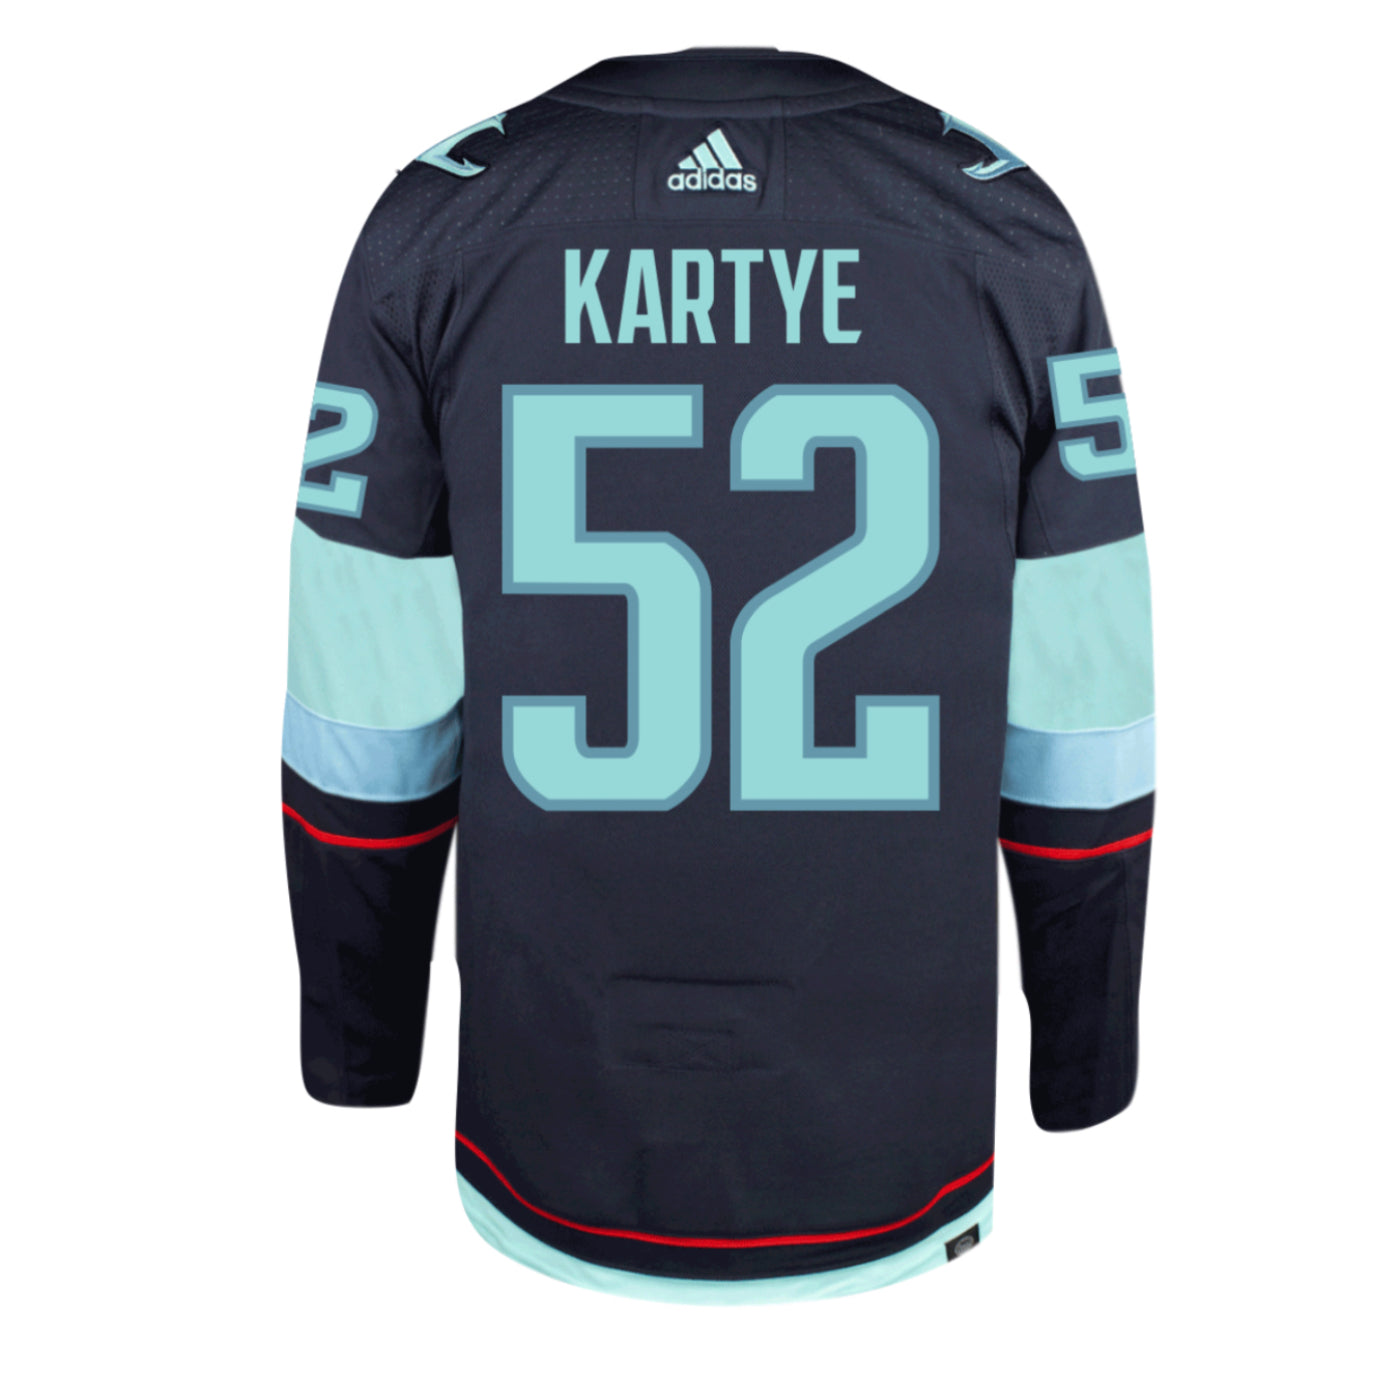 52 KARTYE - Seattle Kraken Authentic Adidas Home Player Jersey